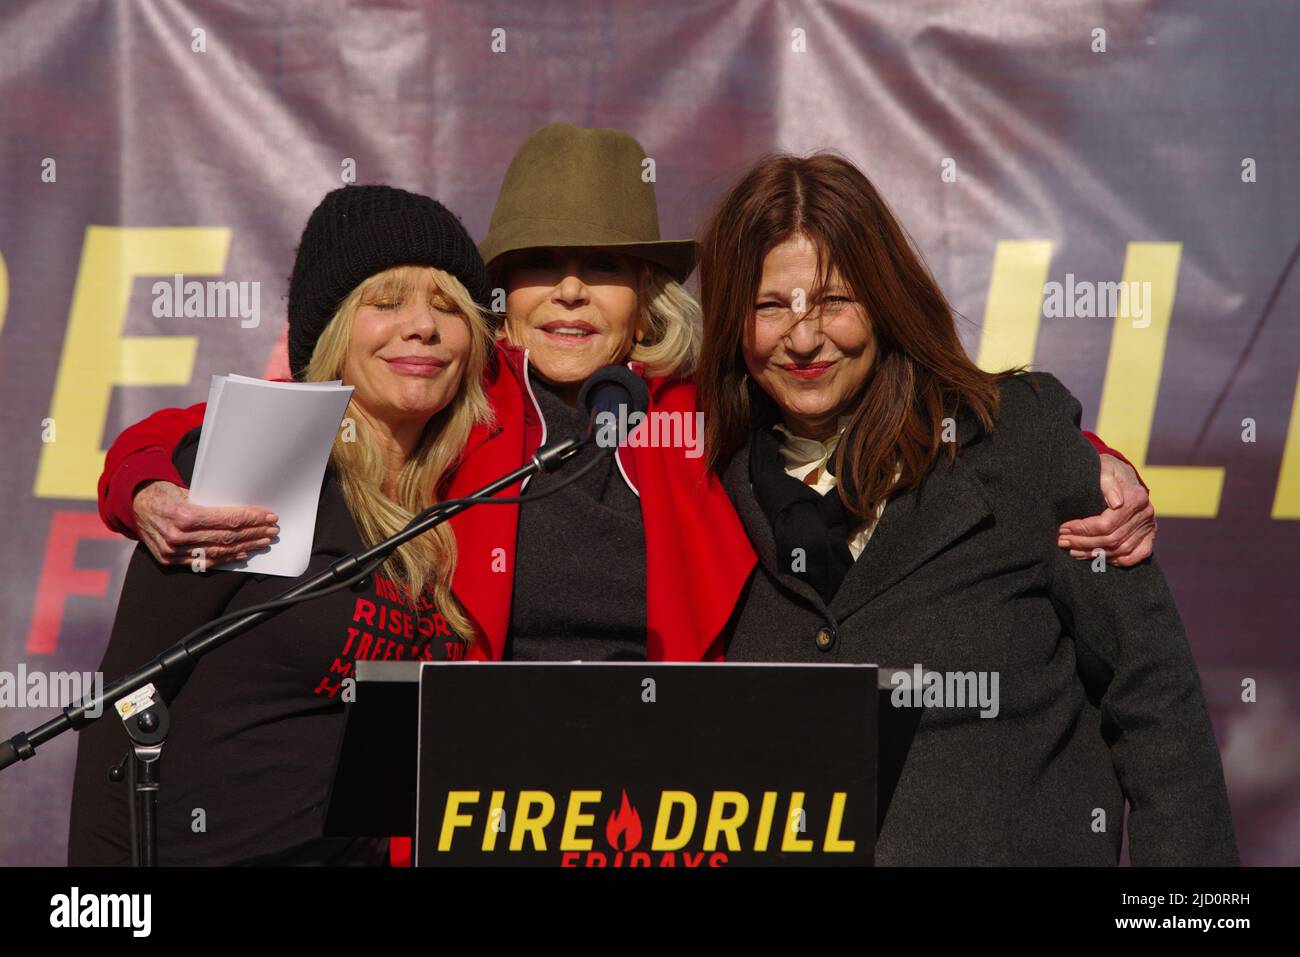 Les acteurs Rosanna Arquette, Jane Fonda et Catherine keener se présentent lors d'une manifestation contre le changement climatique le vendredi 1 novembre 2019 à Washington. Banque D'Images